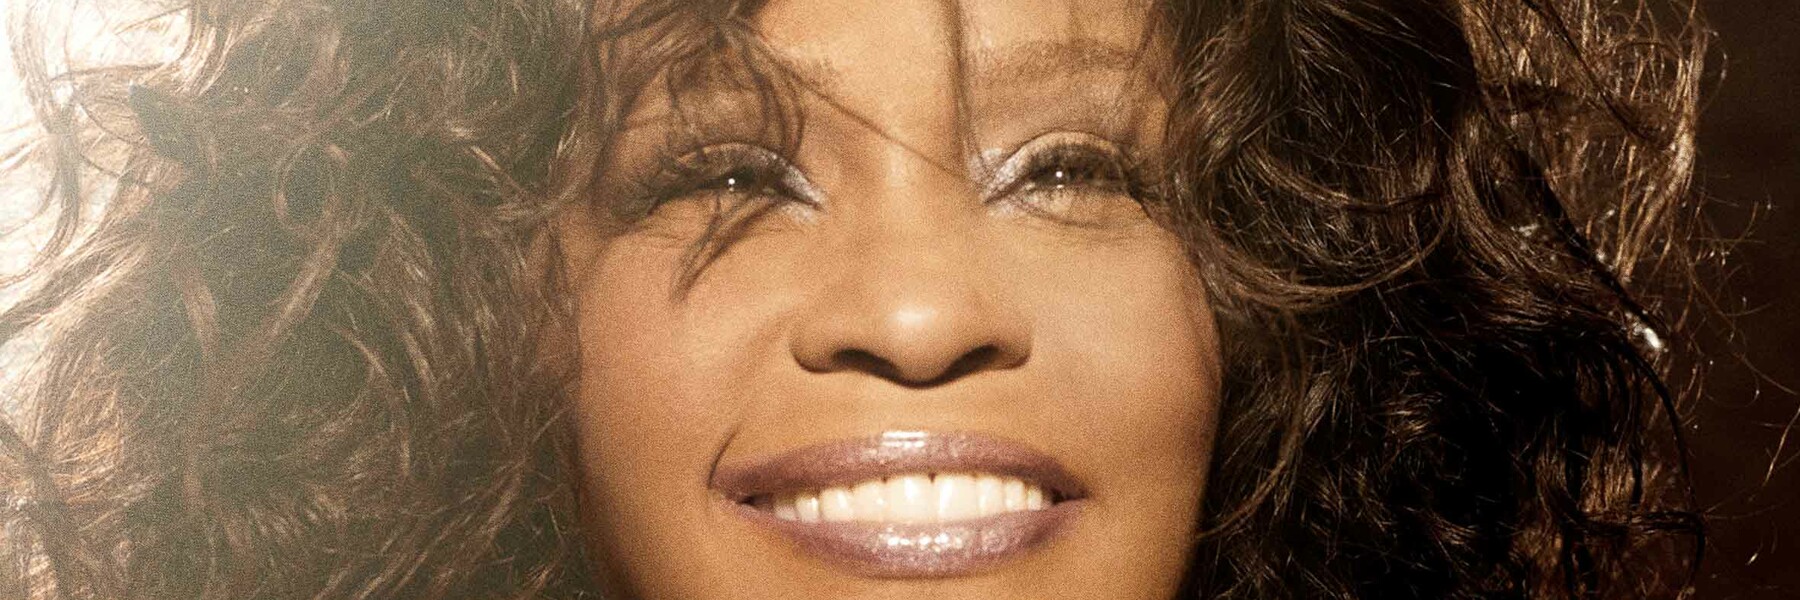 Whitney Houston Hologram – An Evening With Whitney Houston Hologram 19.03.2020